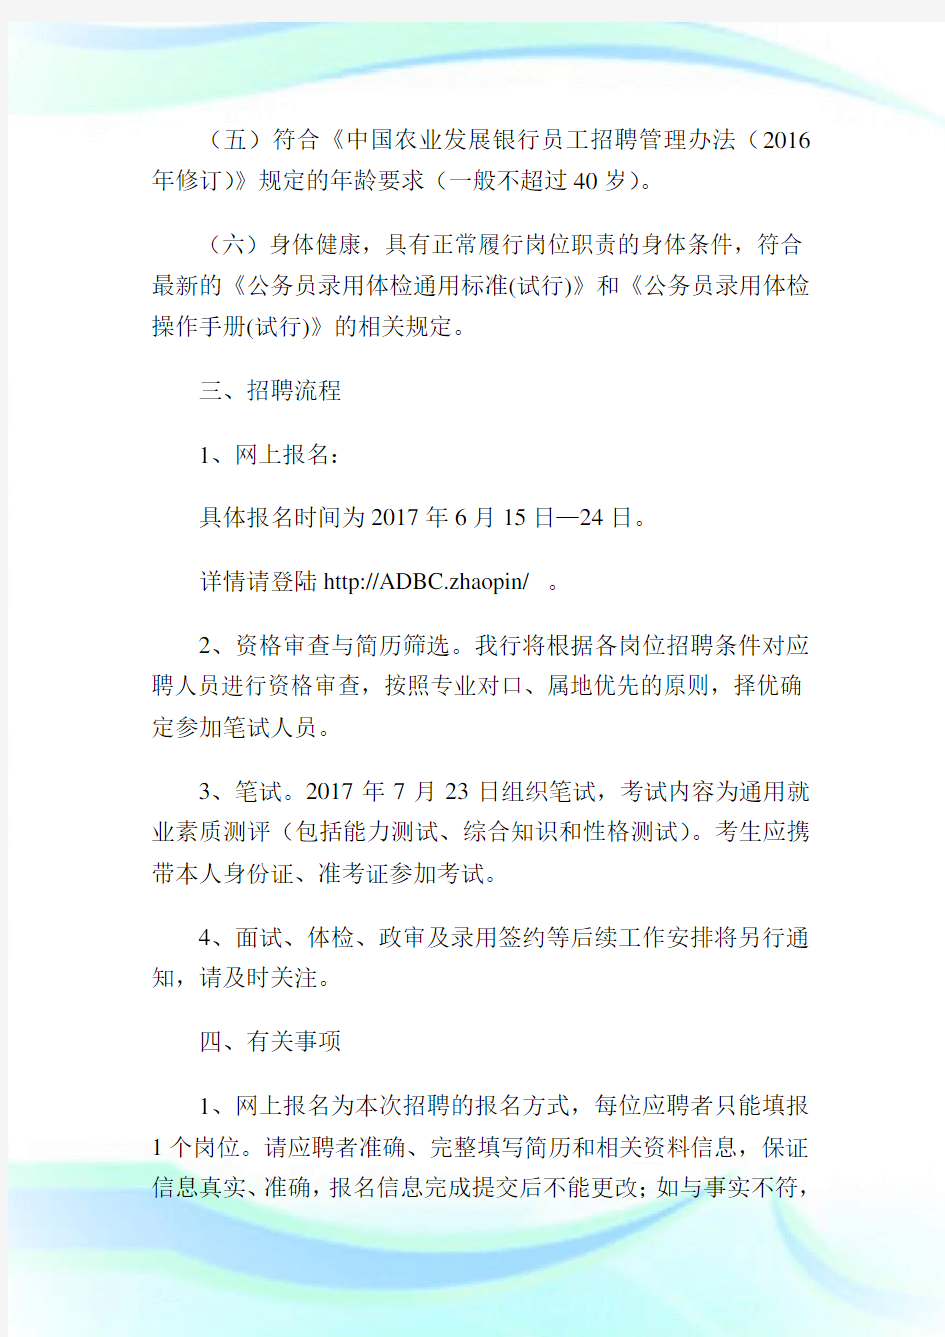 中国农业发展银行社会招聘公告.doc